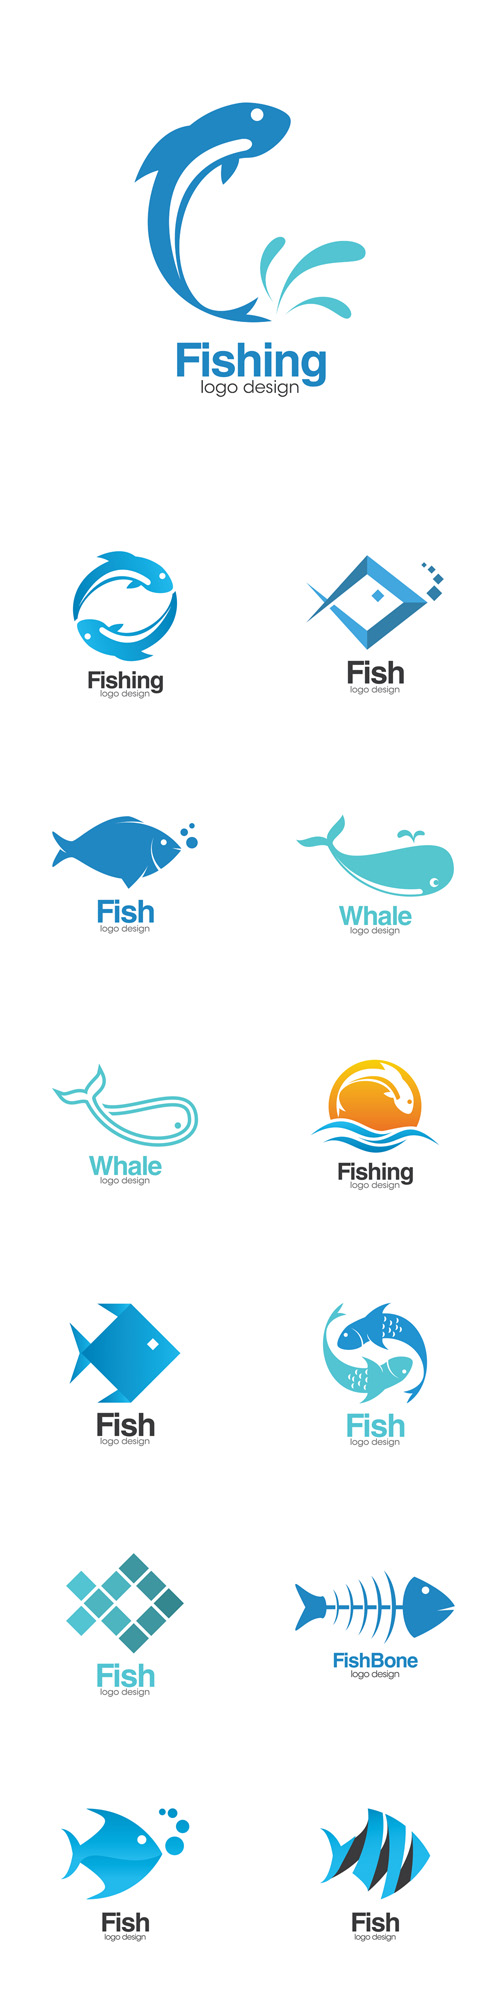 Vectors - Fish Creative Concept Logo Design Templates